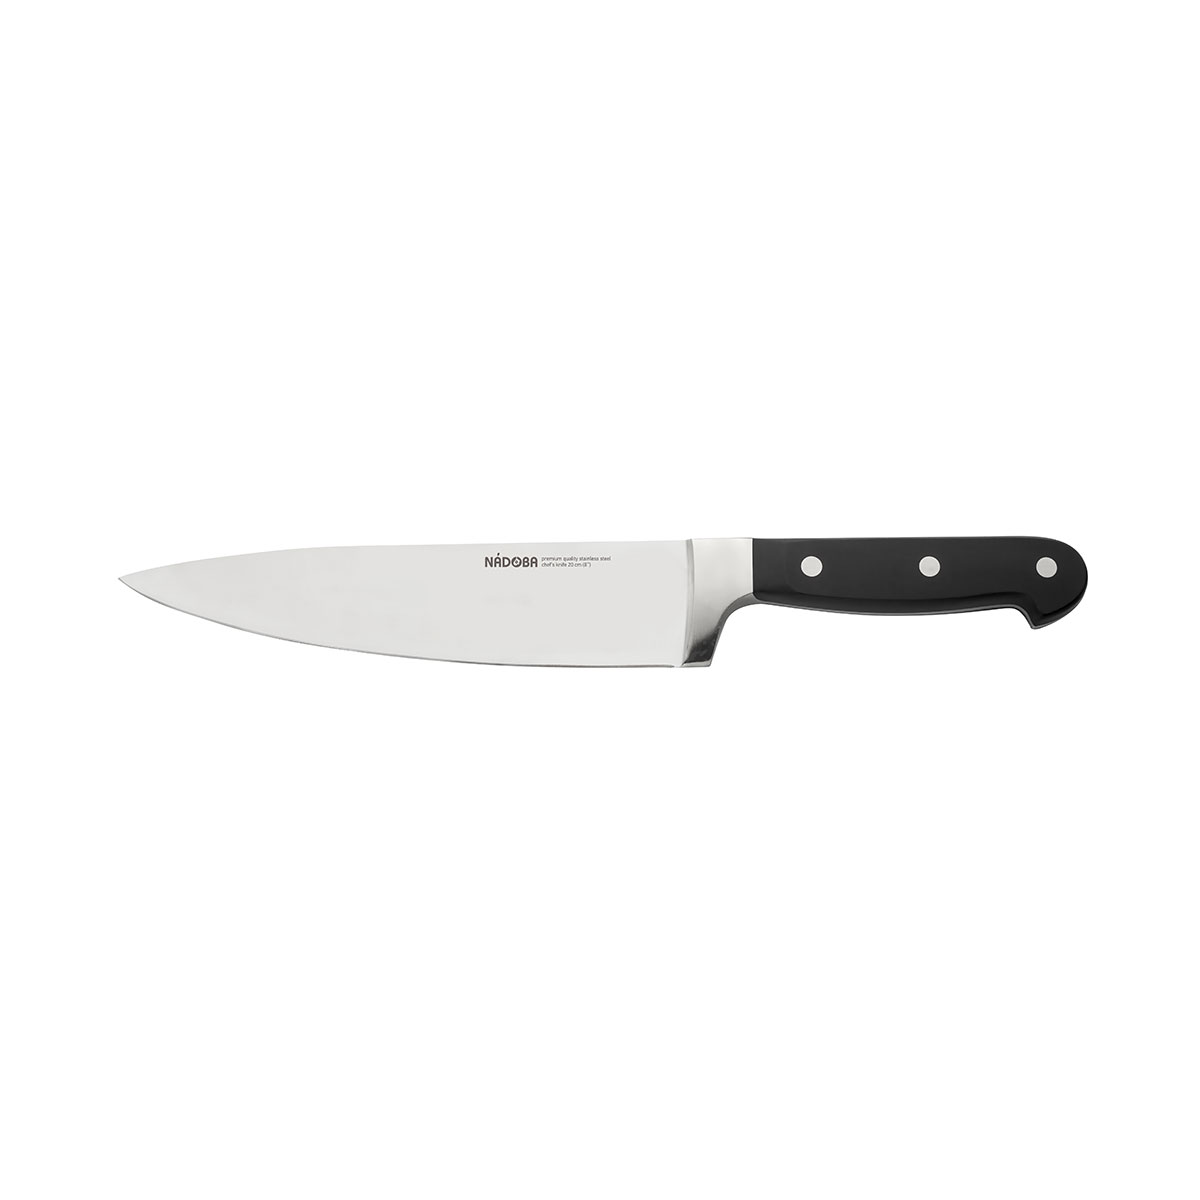 Нож Nadoba поварской 724213, 20 см nadoba нож поварской helga 20 см серебристый черный